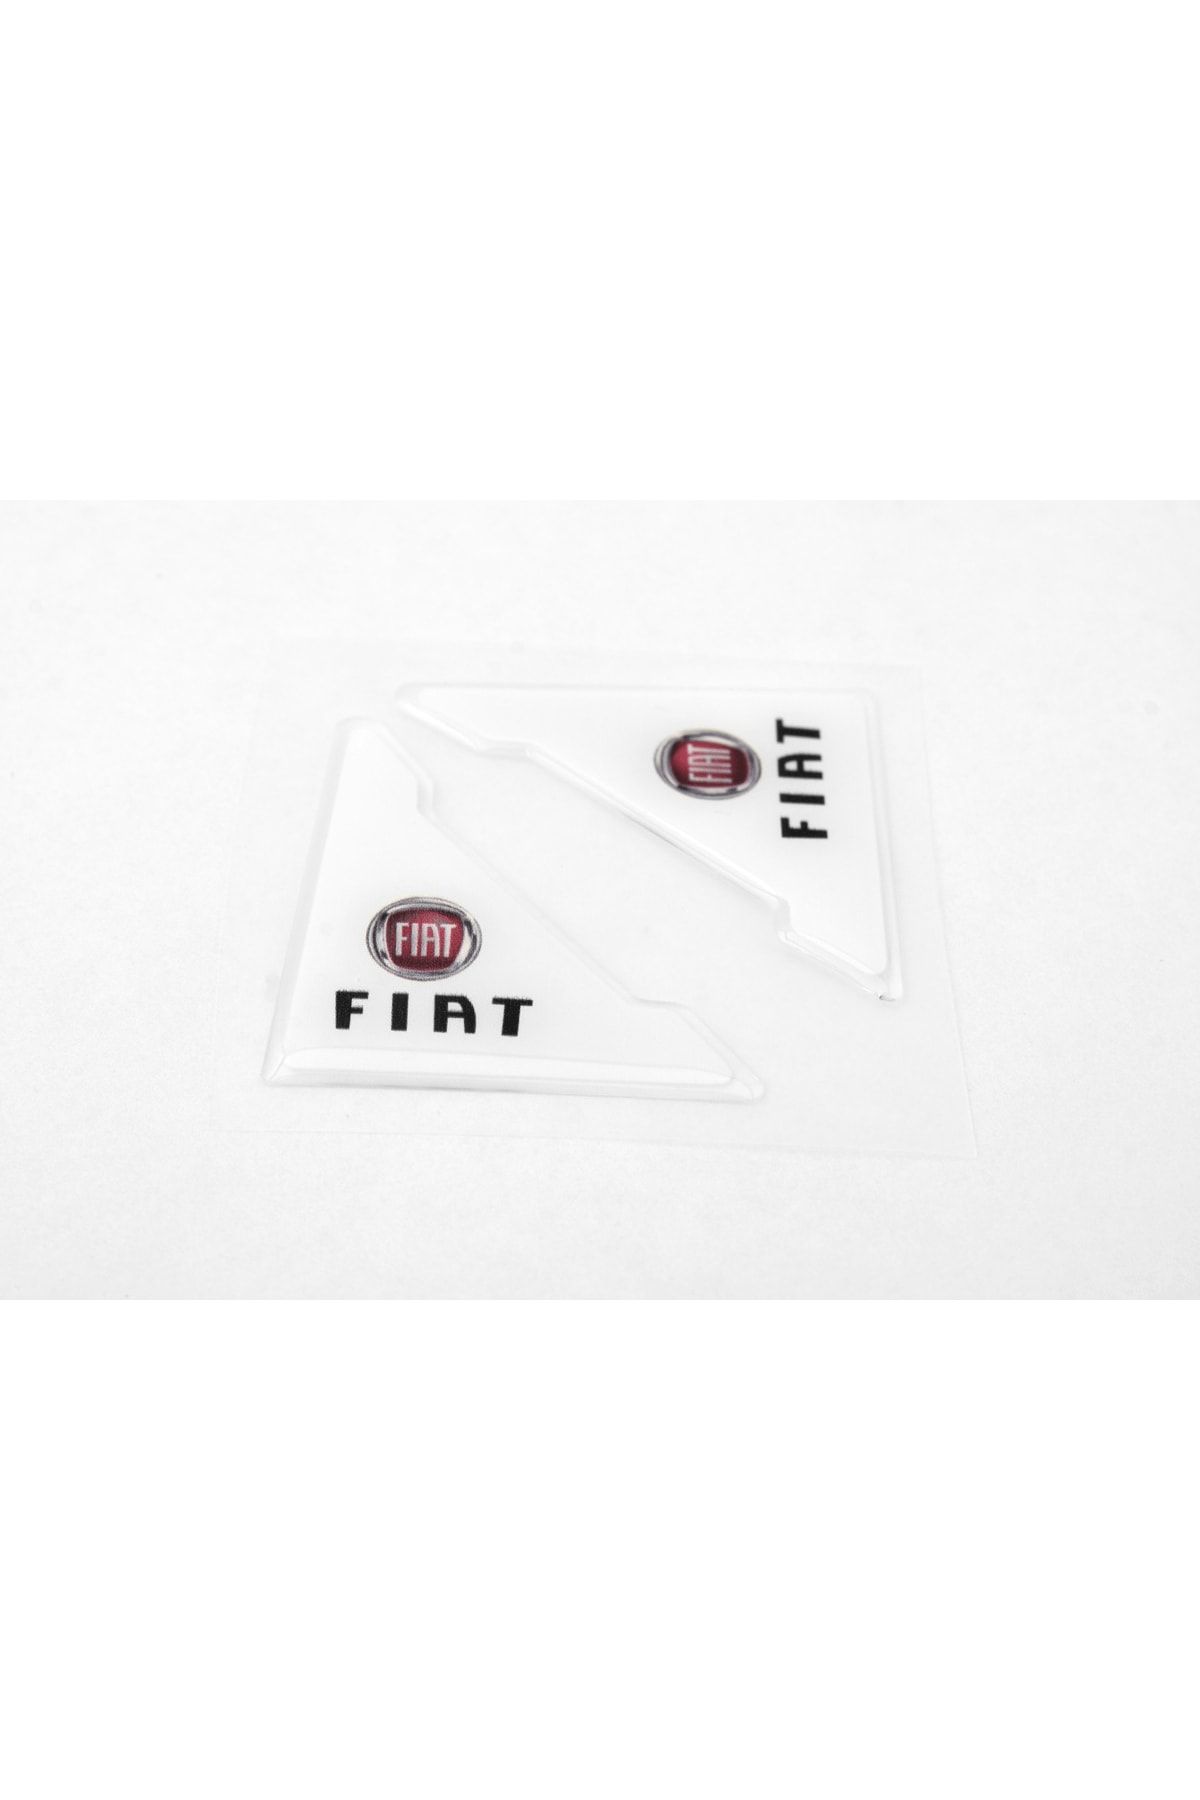 Flow Fiat Özel Logolu Otomobil Kapı Çizik Darbe Koruma Silikon Beyaz